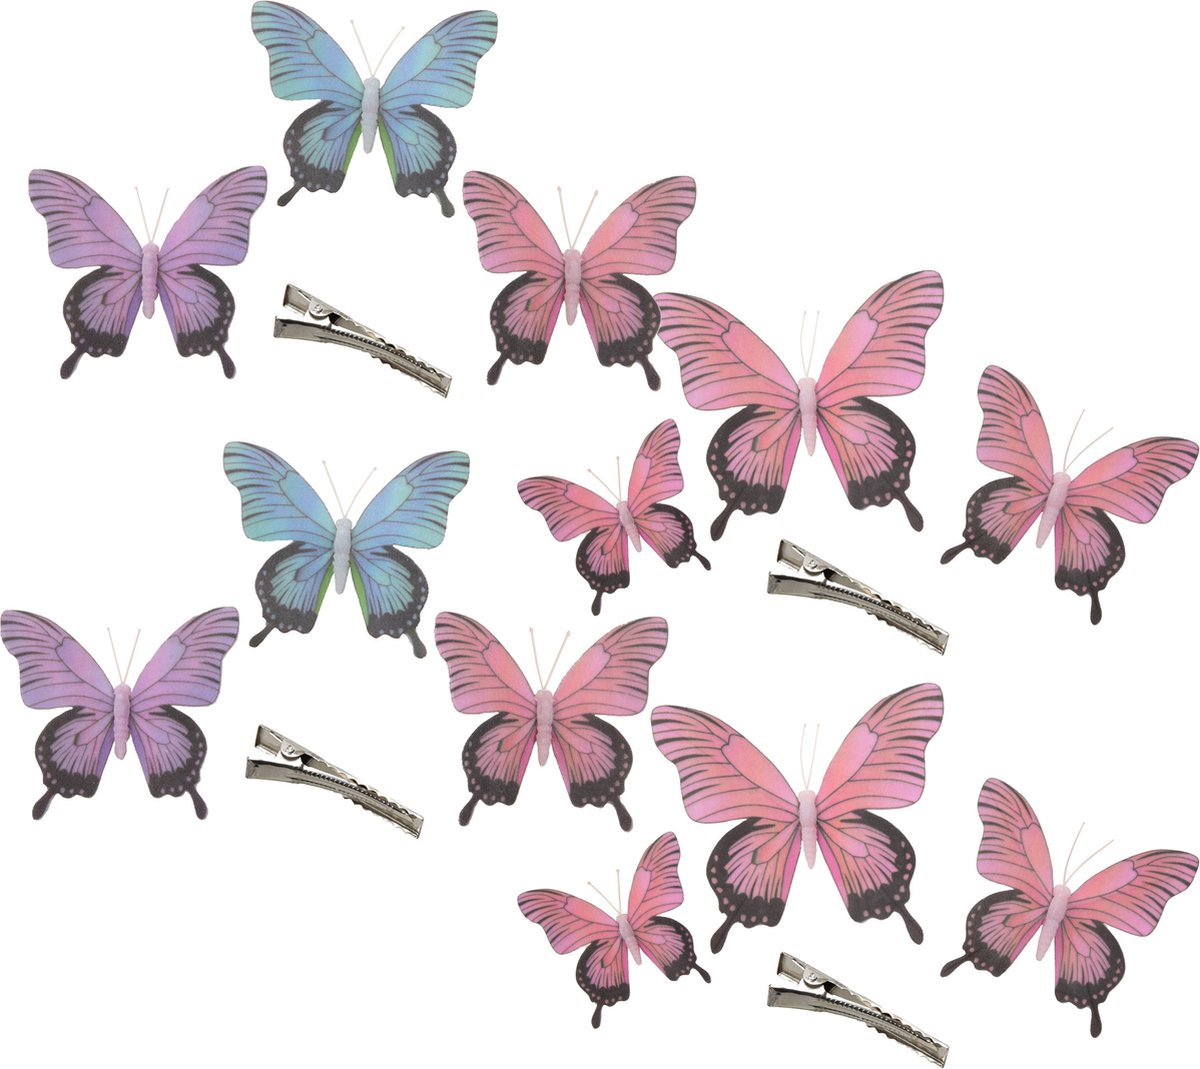 Othmar Decorations Decoratie vlinders op clip 12x stuks - paars/blauw/roze - 12/16/20 cm